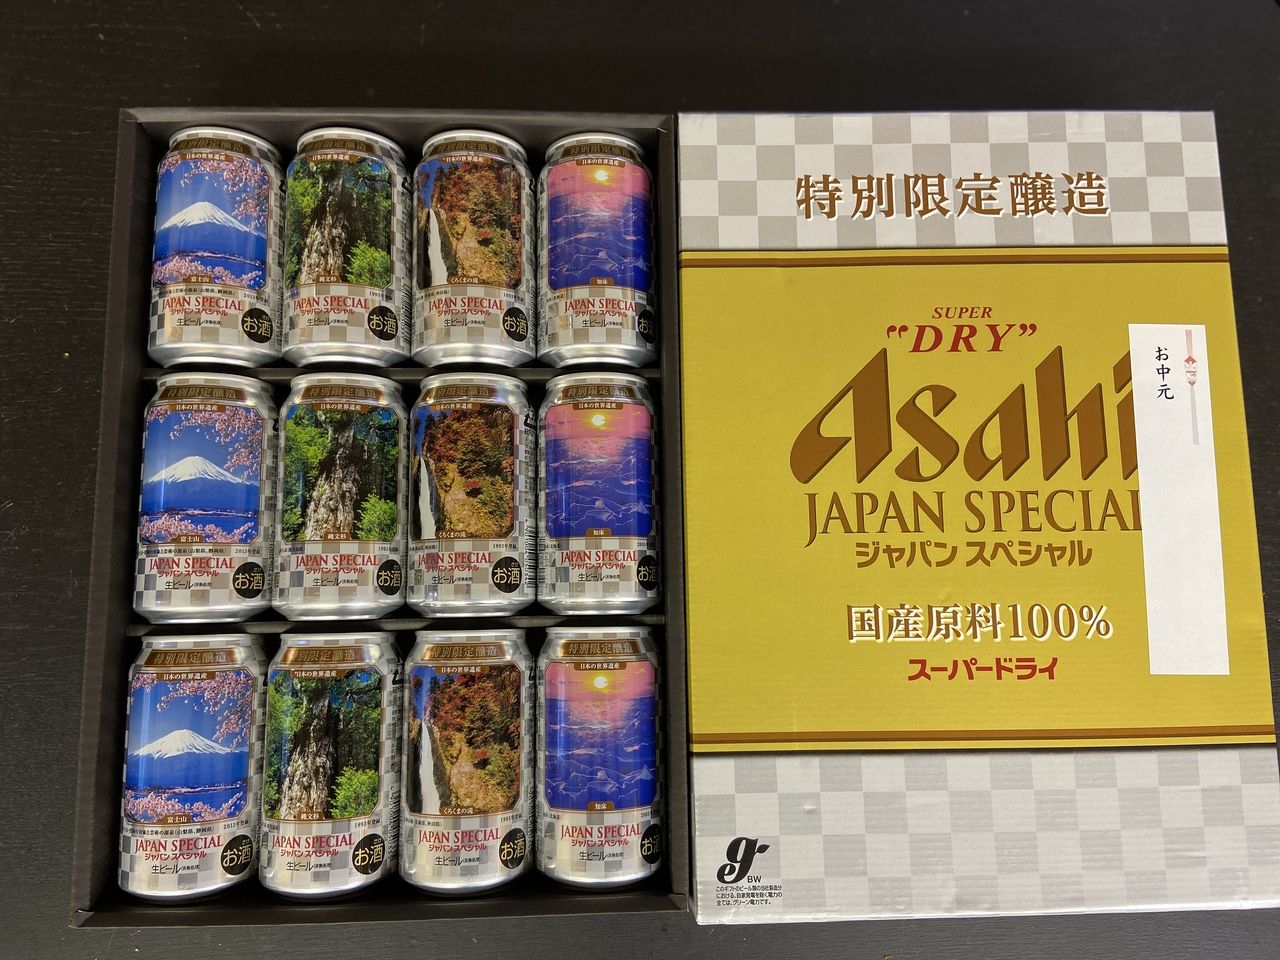 アサヒアサヒビール 特別限定醸造『アサヒスーパードライ ジャパンスペシャル 』